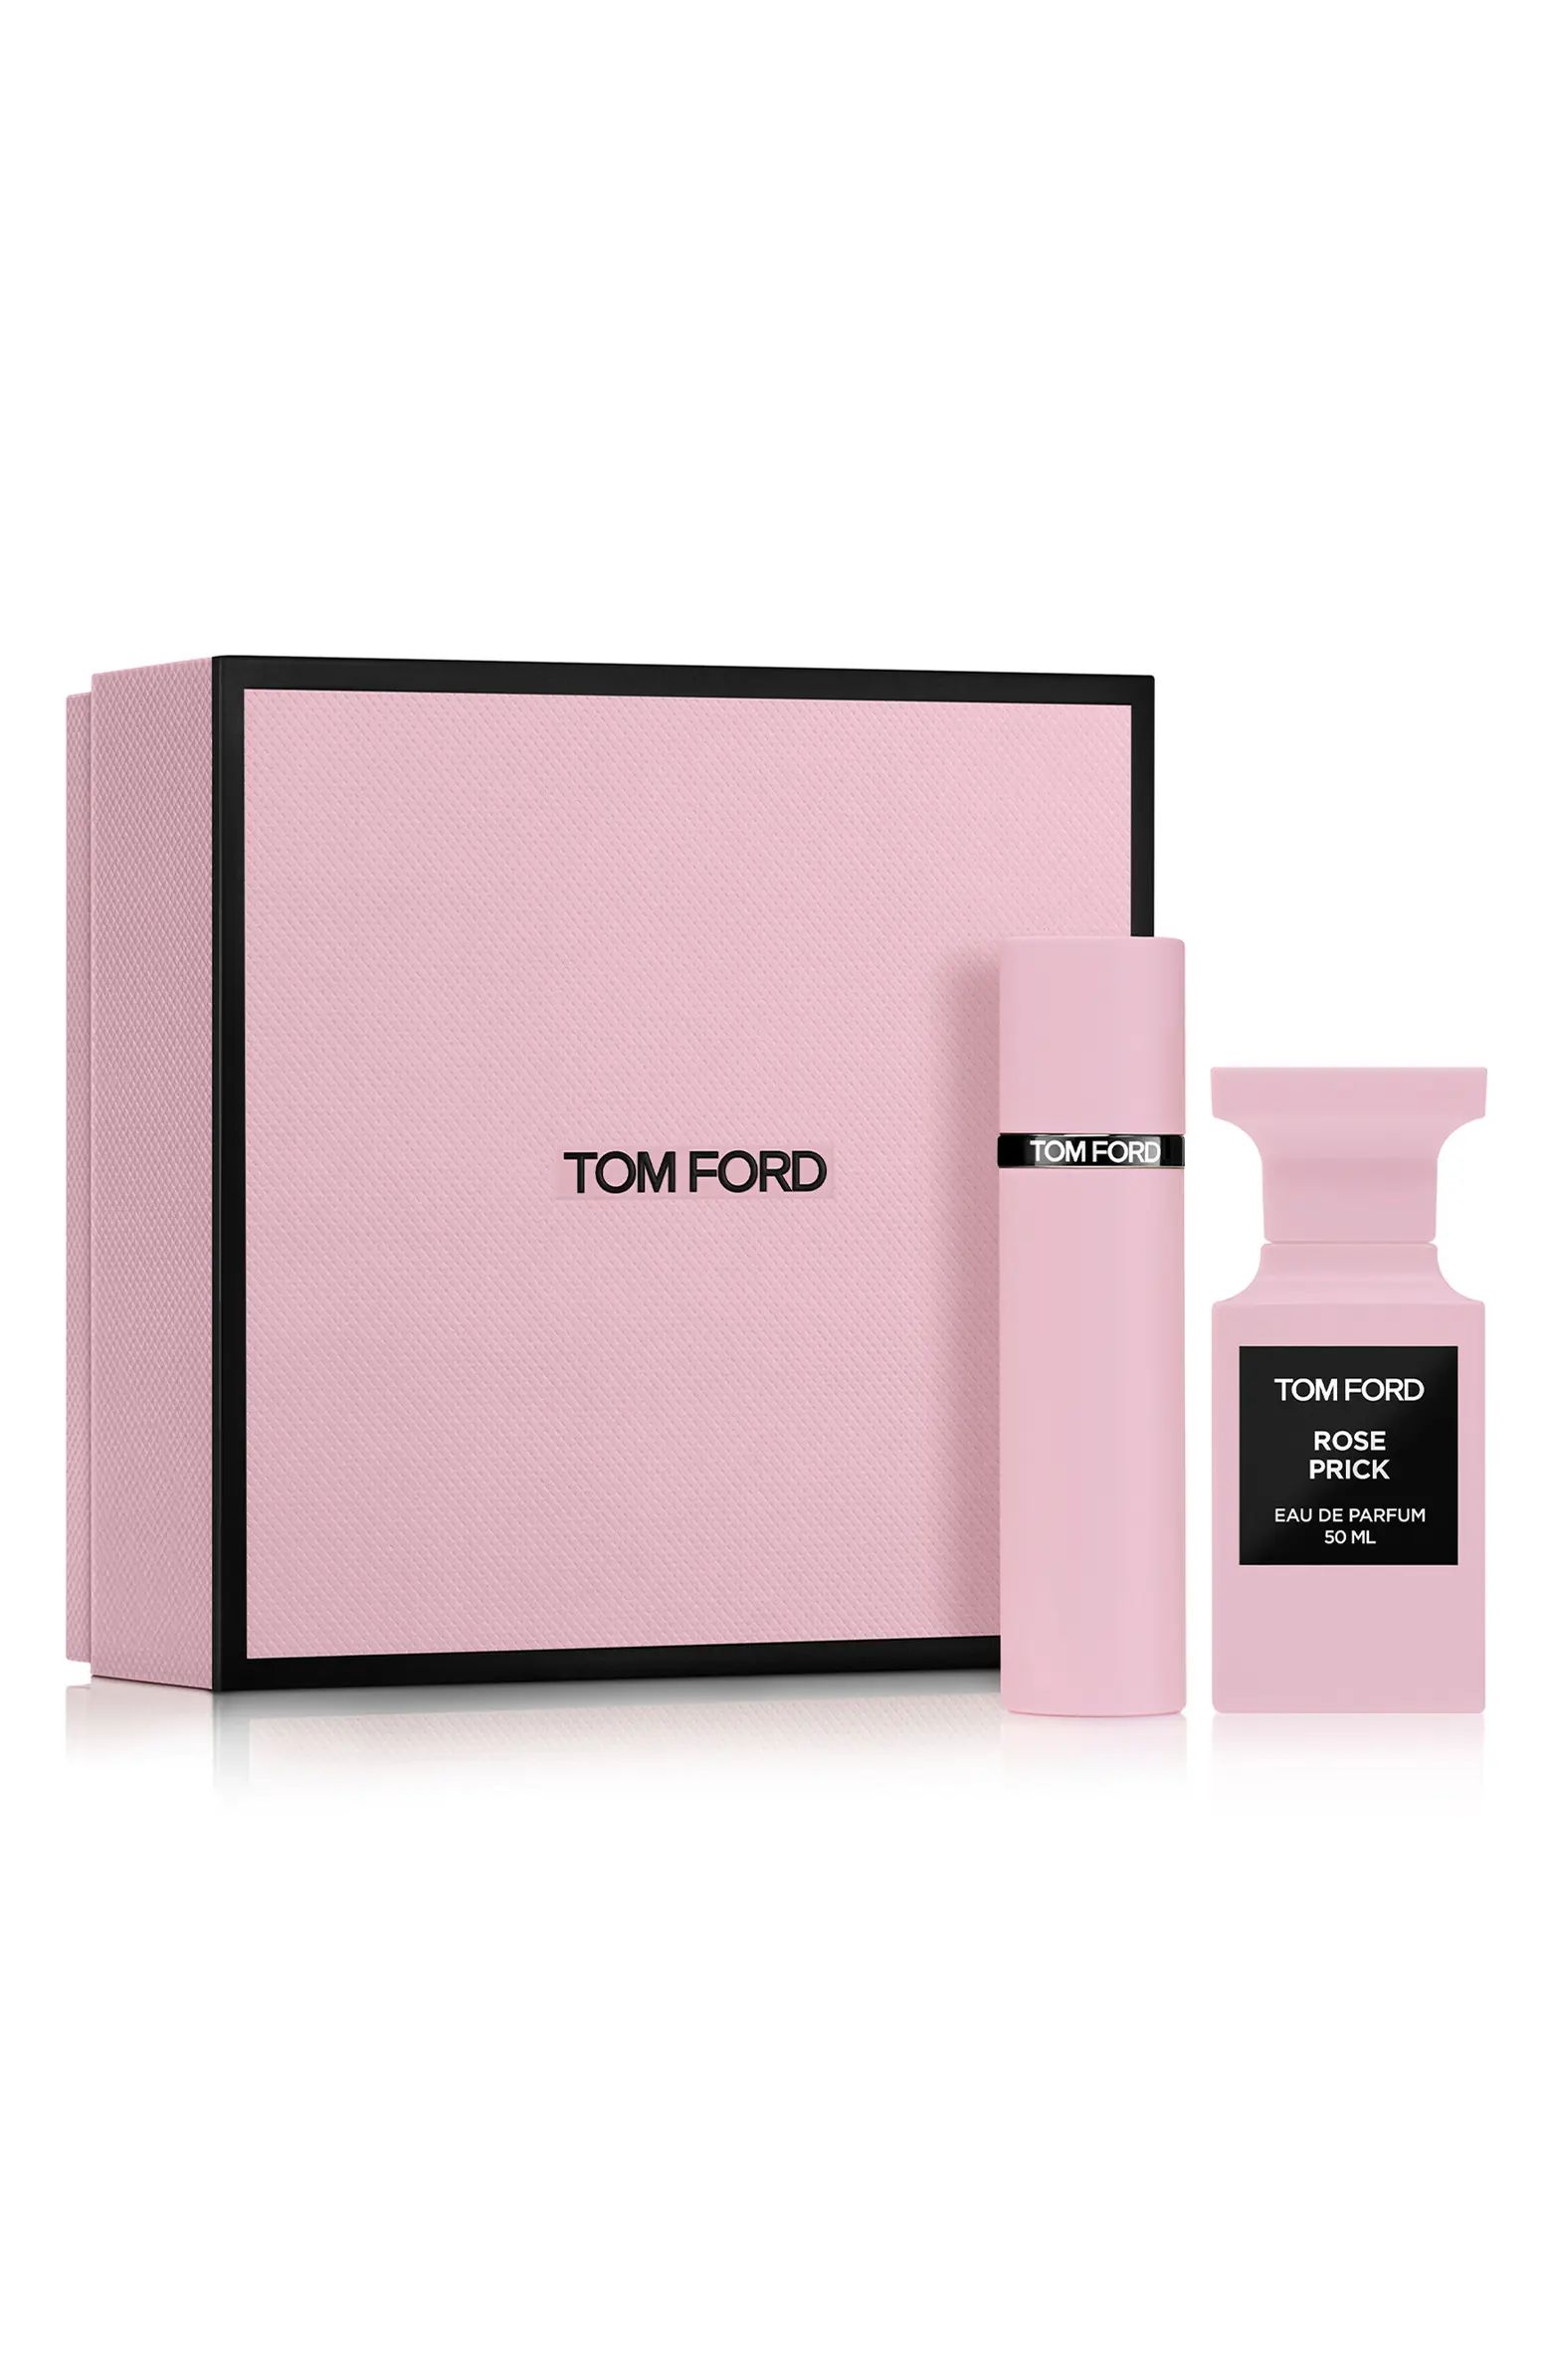 Tom Ford Private Blend Rose Prick Eau de Parfum Set $443 Value | Nordstrom | Nordstrom